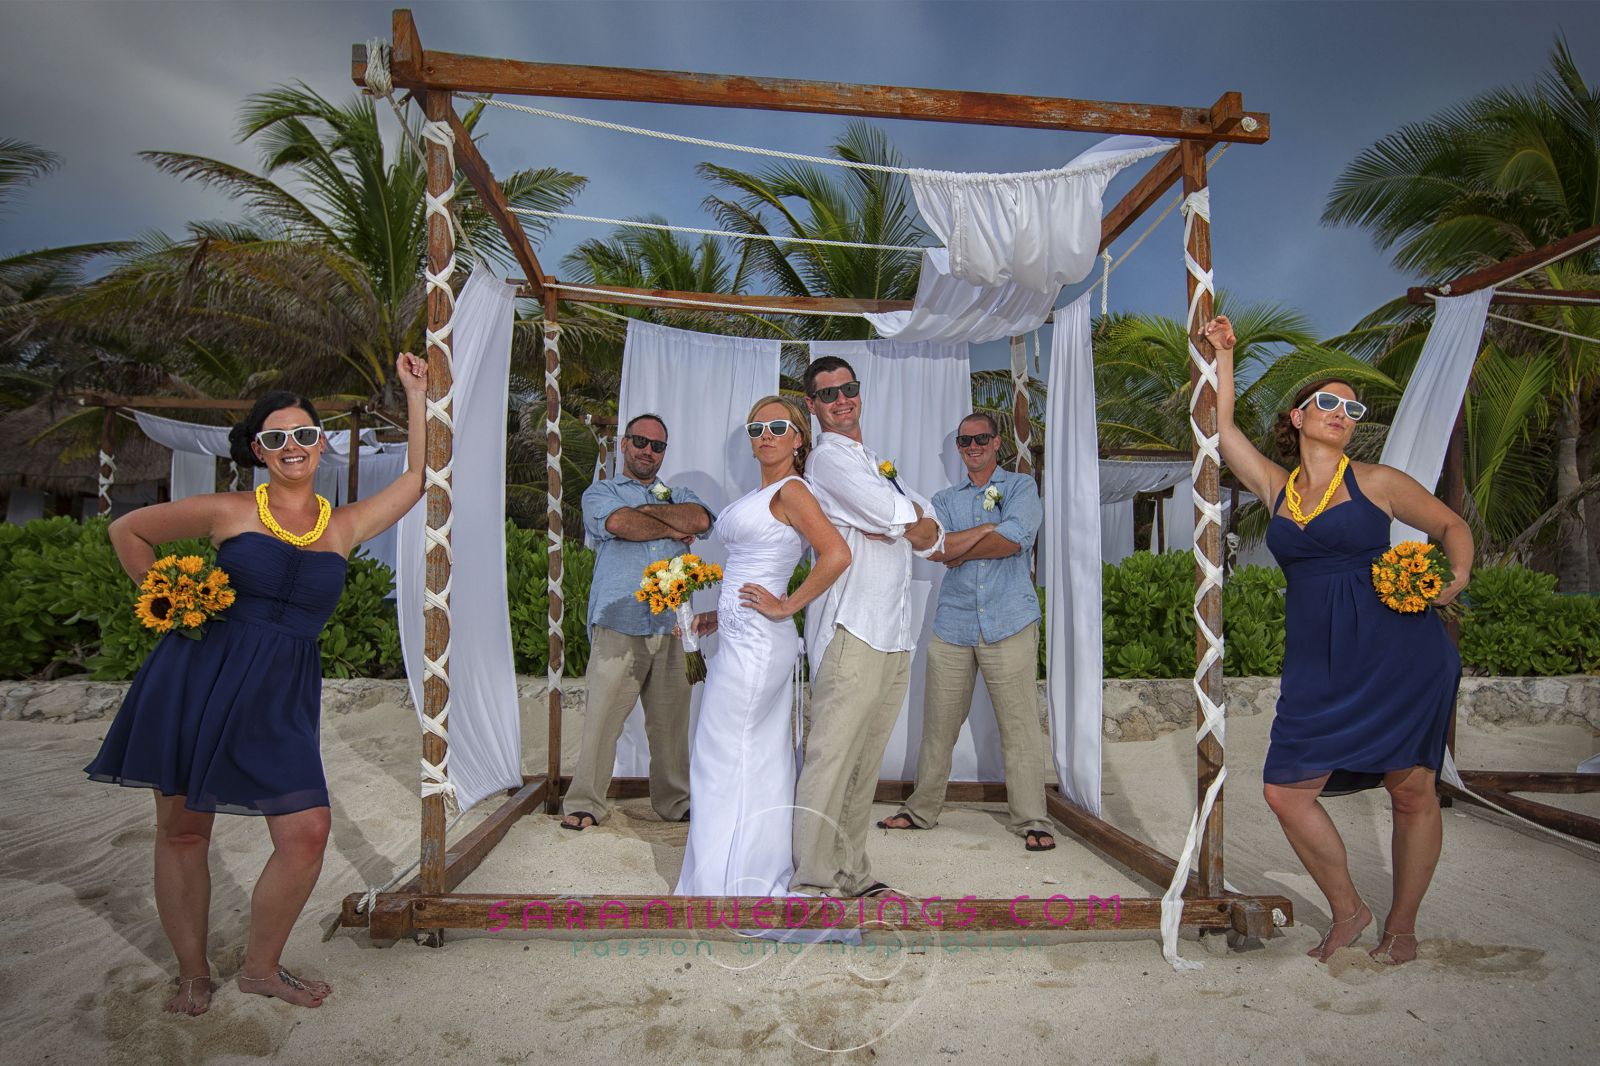 El Dorado Royale - Bridal Party -Beach Destination Wedding in Mayan Riviera
Photography by Sarani E.